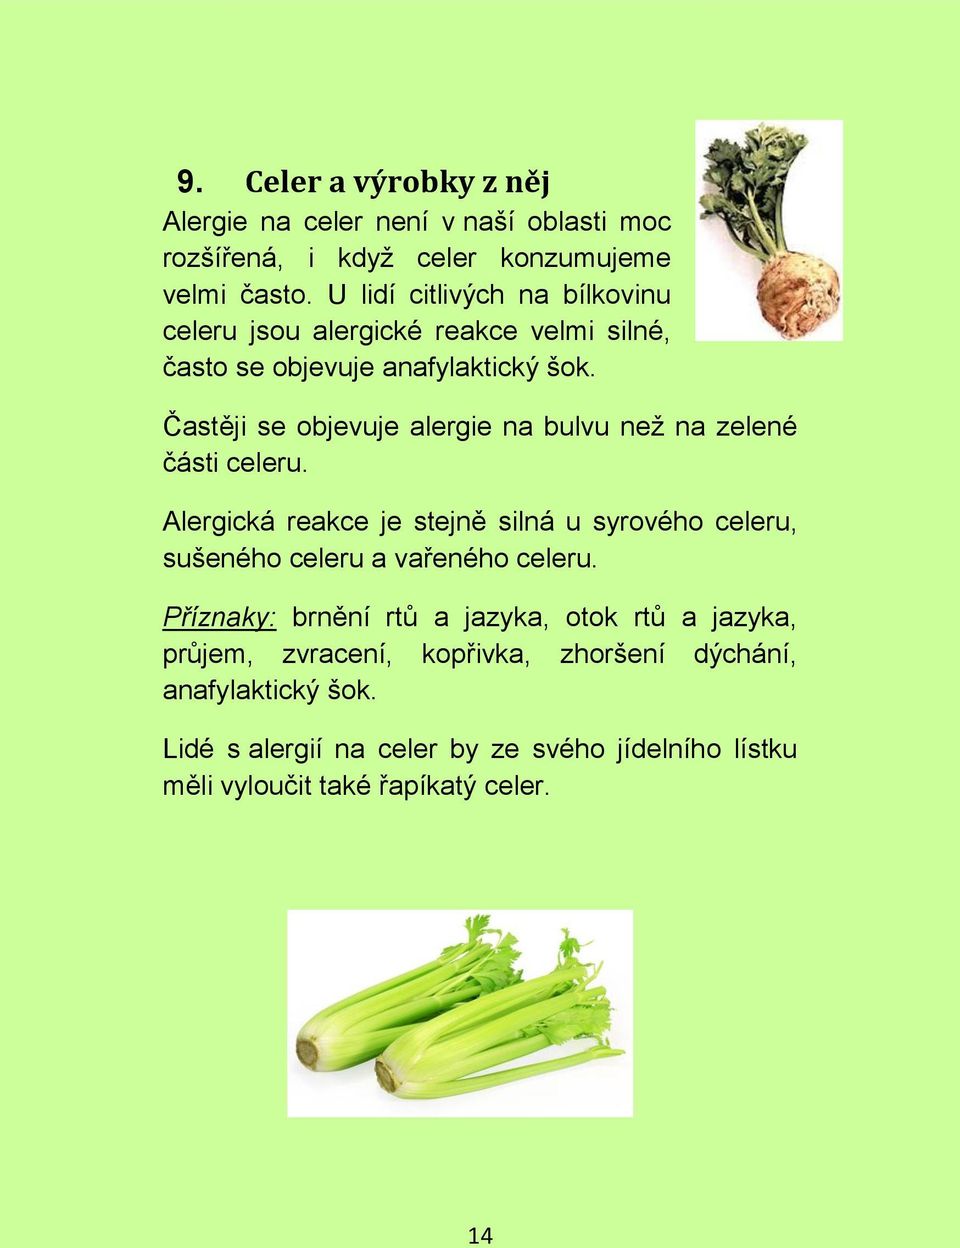 Častěji se objevuje alergie na bulvu než na zelené části celeru.